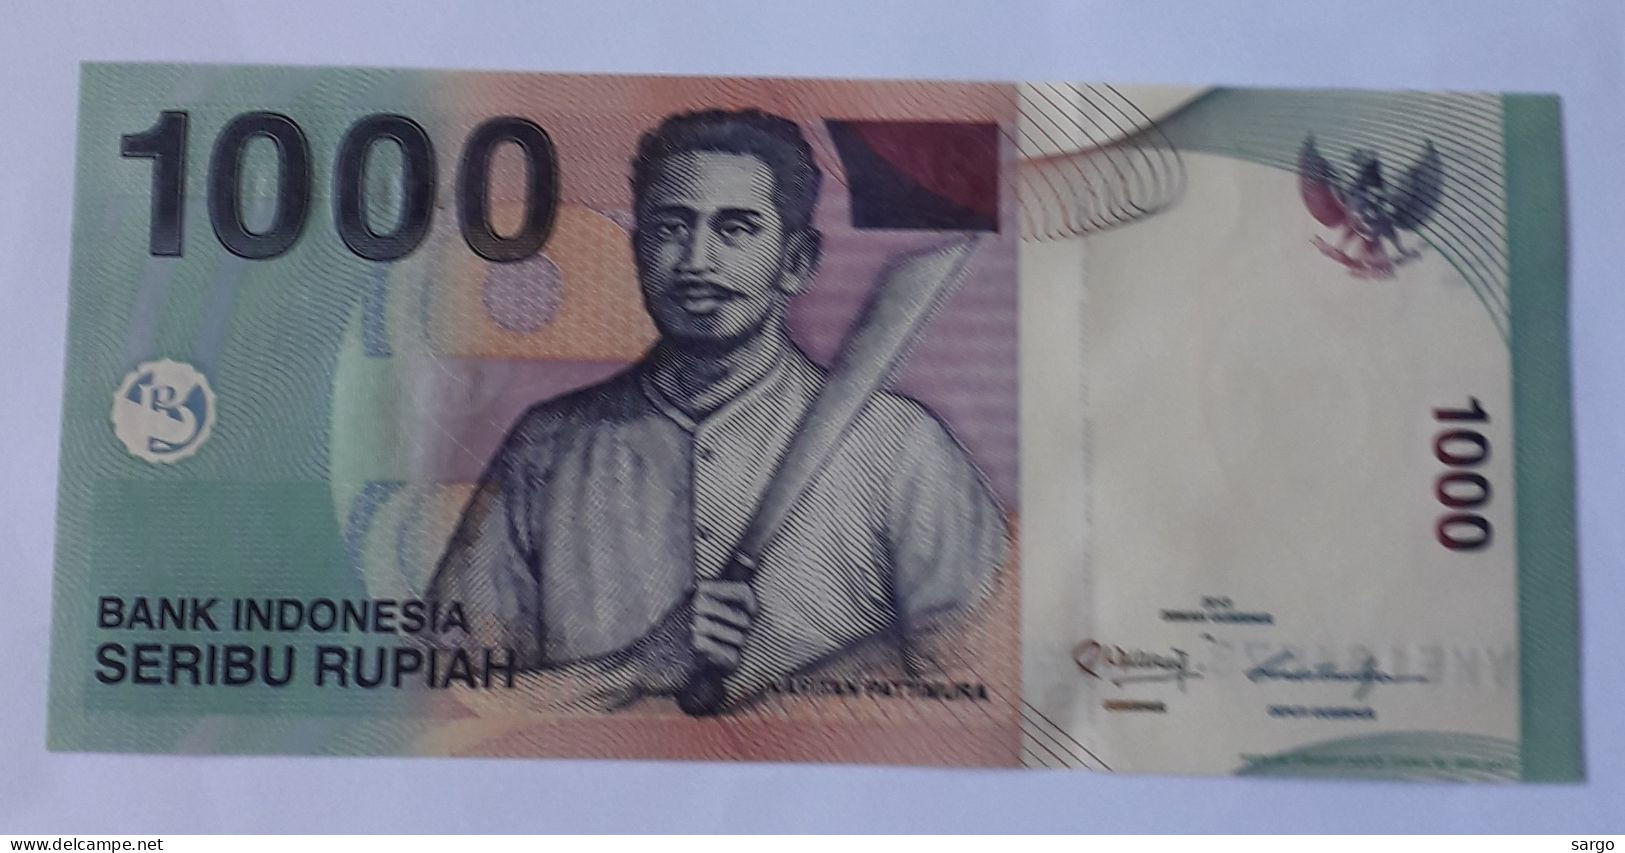 INDONESIA - 1.000 RUPIAH - P 141 - 2013 - UNC - BANKNOTES - PAPER MONEY - CARTAMONETA - - Indonesia